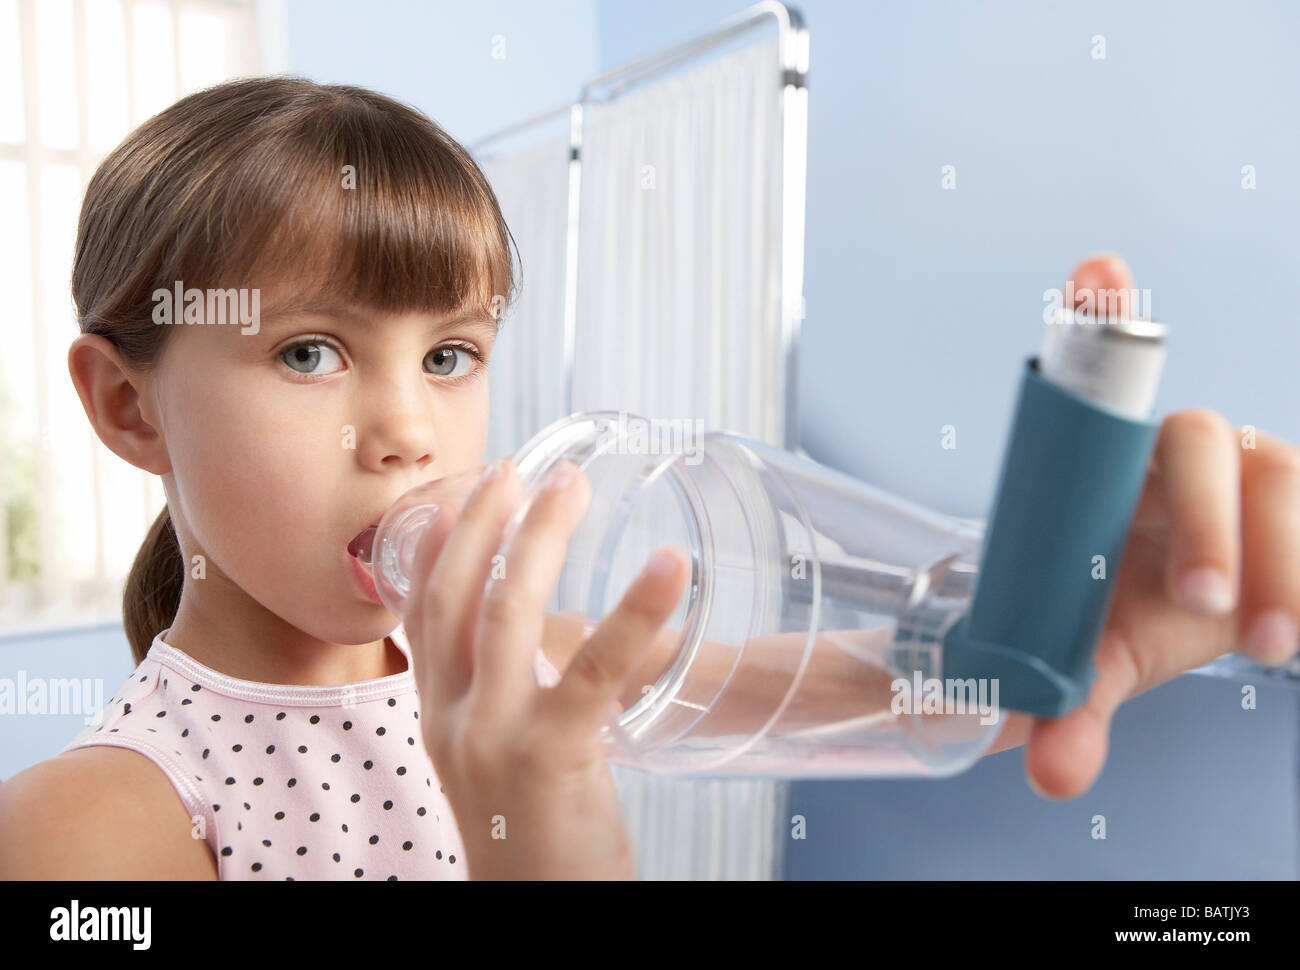 Asma distanziatore. Ragazza giovane con un distanziale (camera di plastica) con un inalatore per trattare la sua asma. Foto Stock